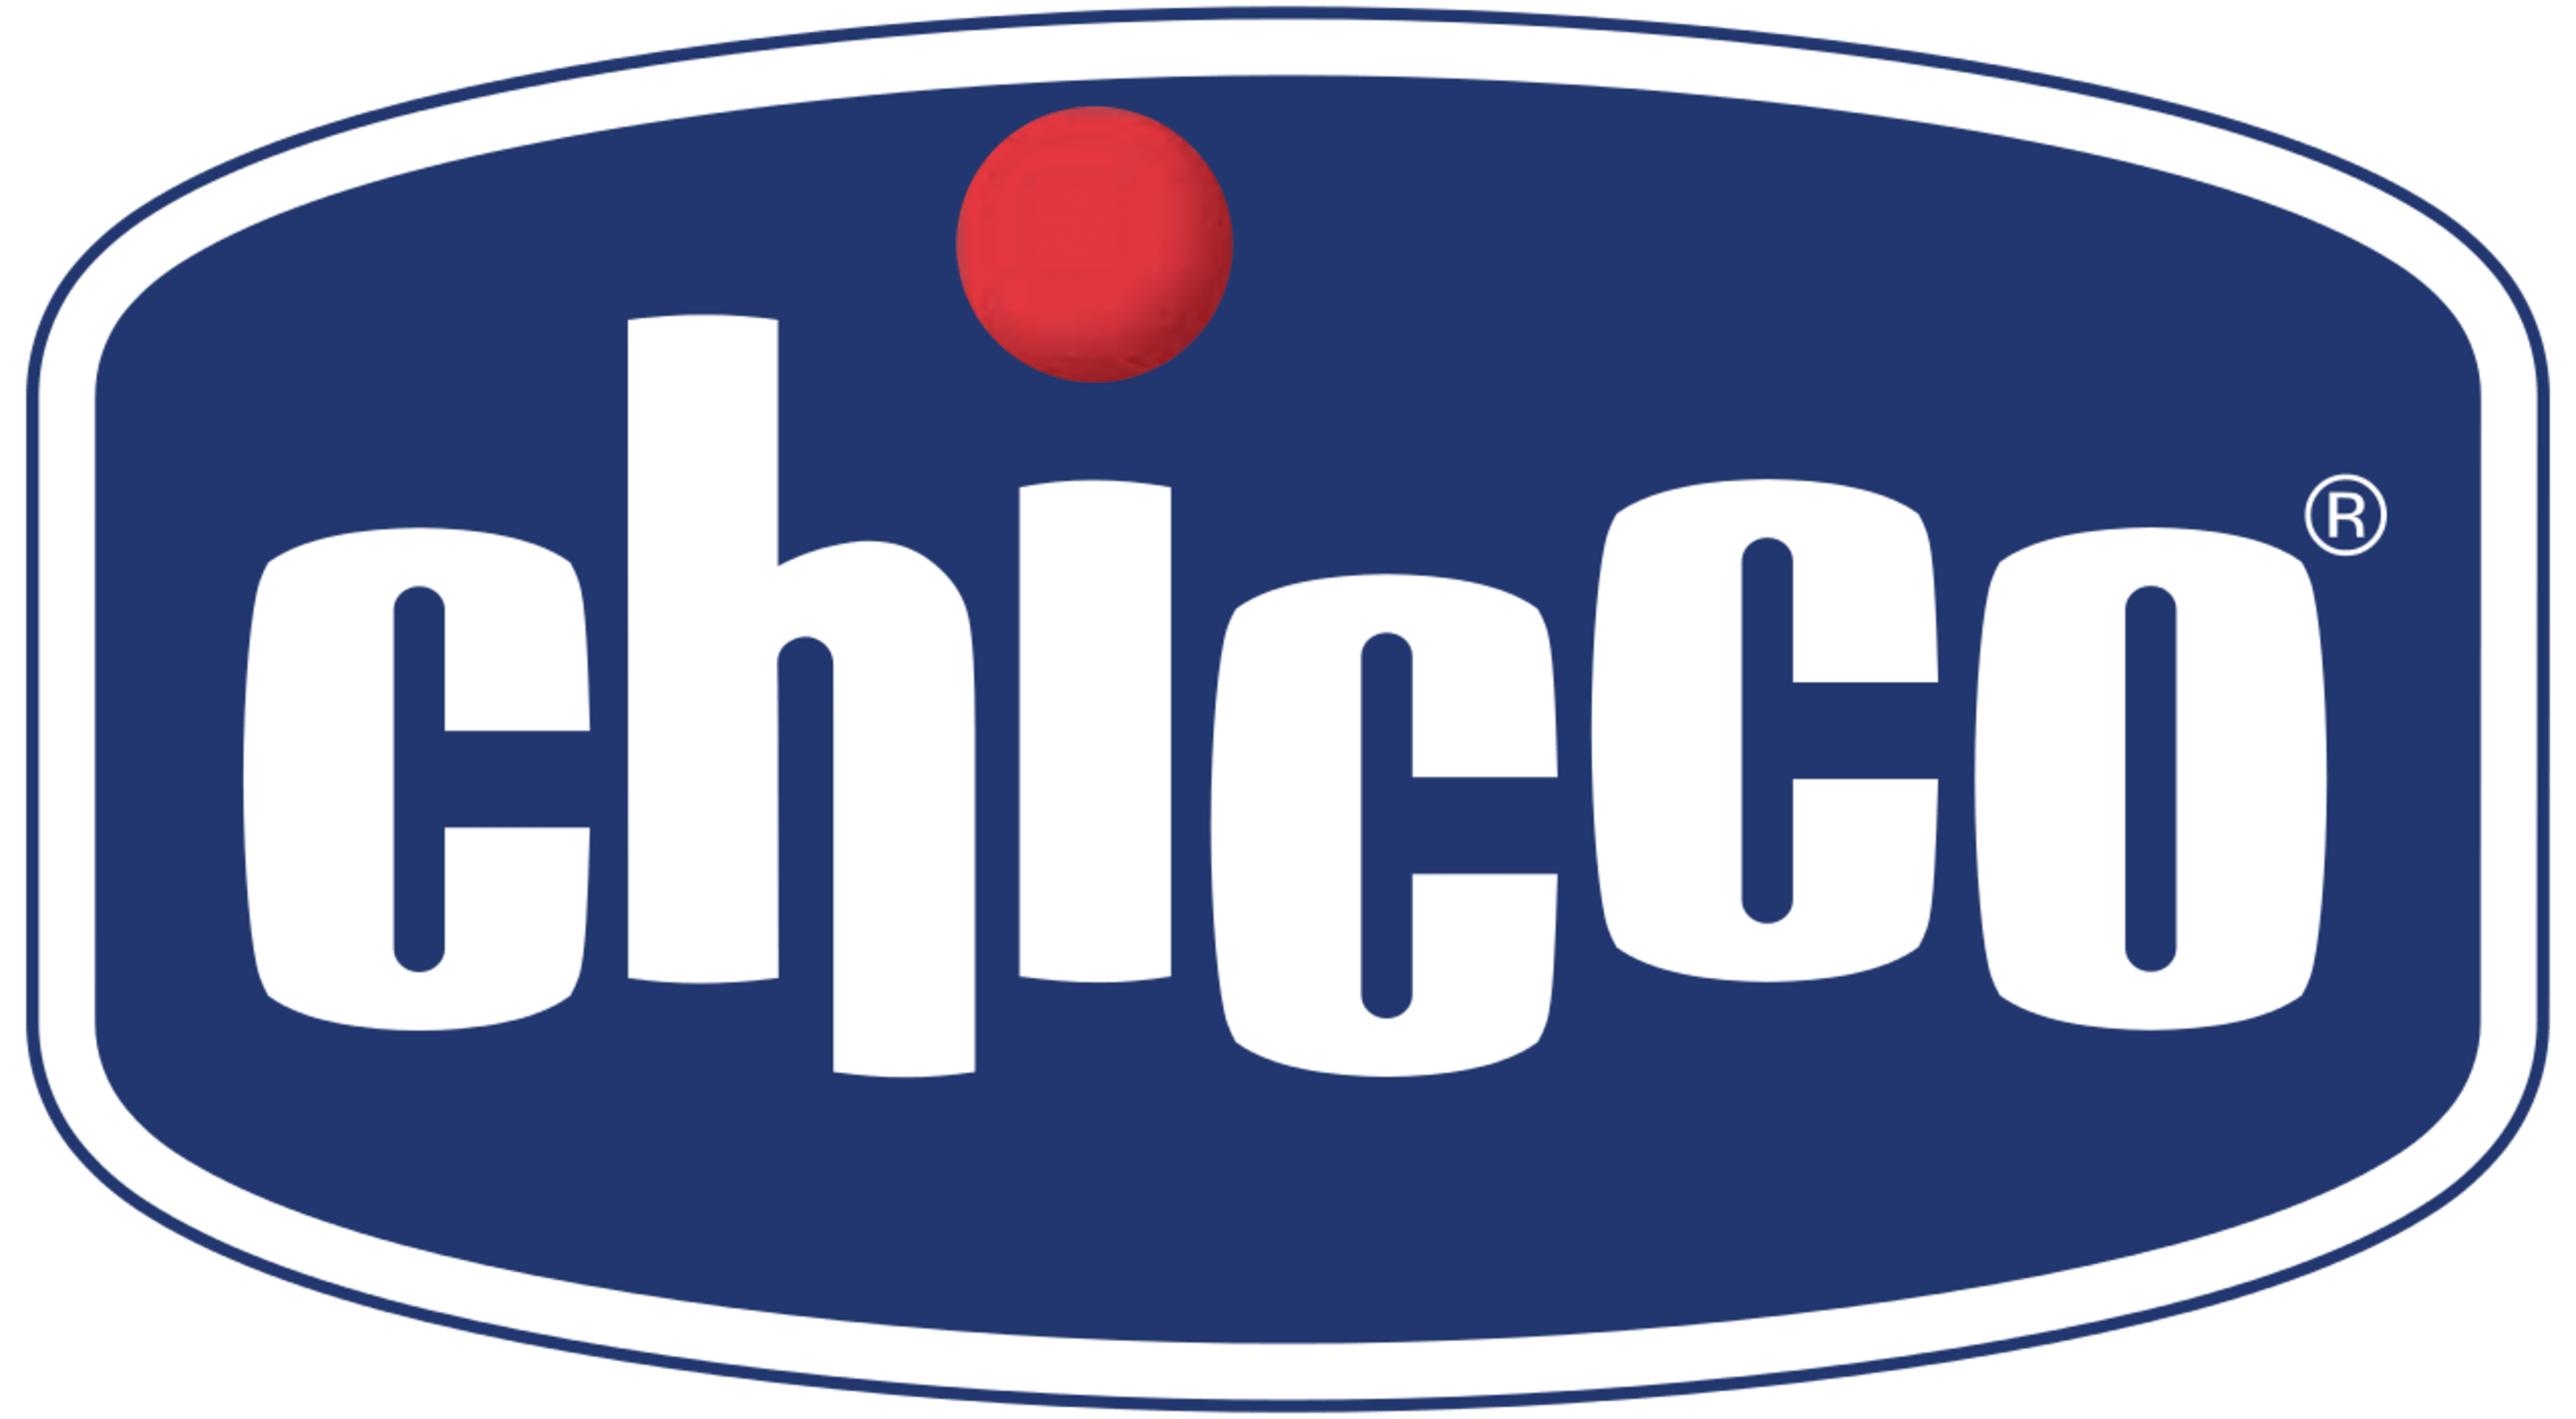 ChiccoCode